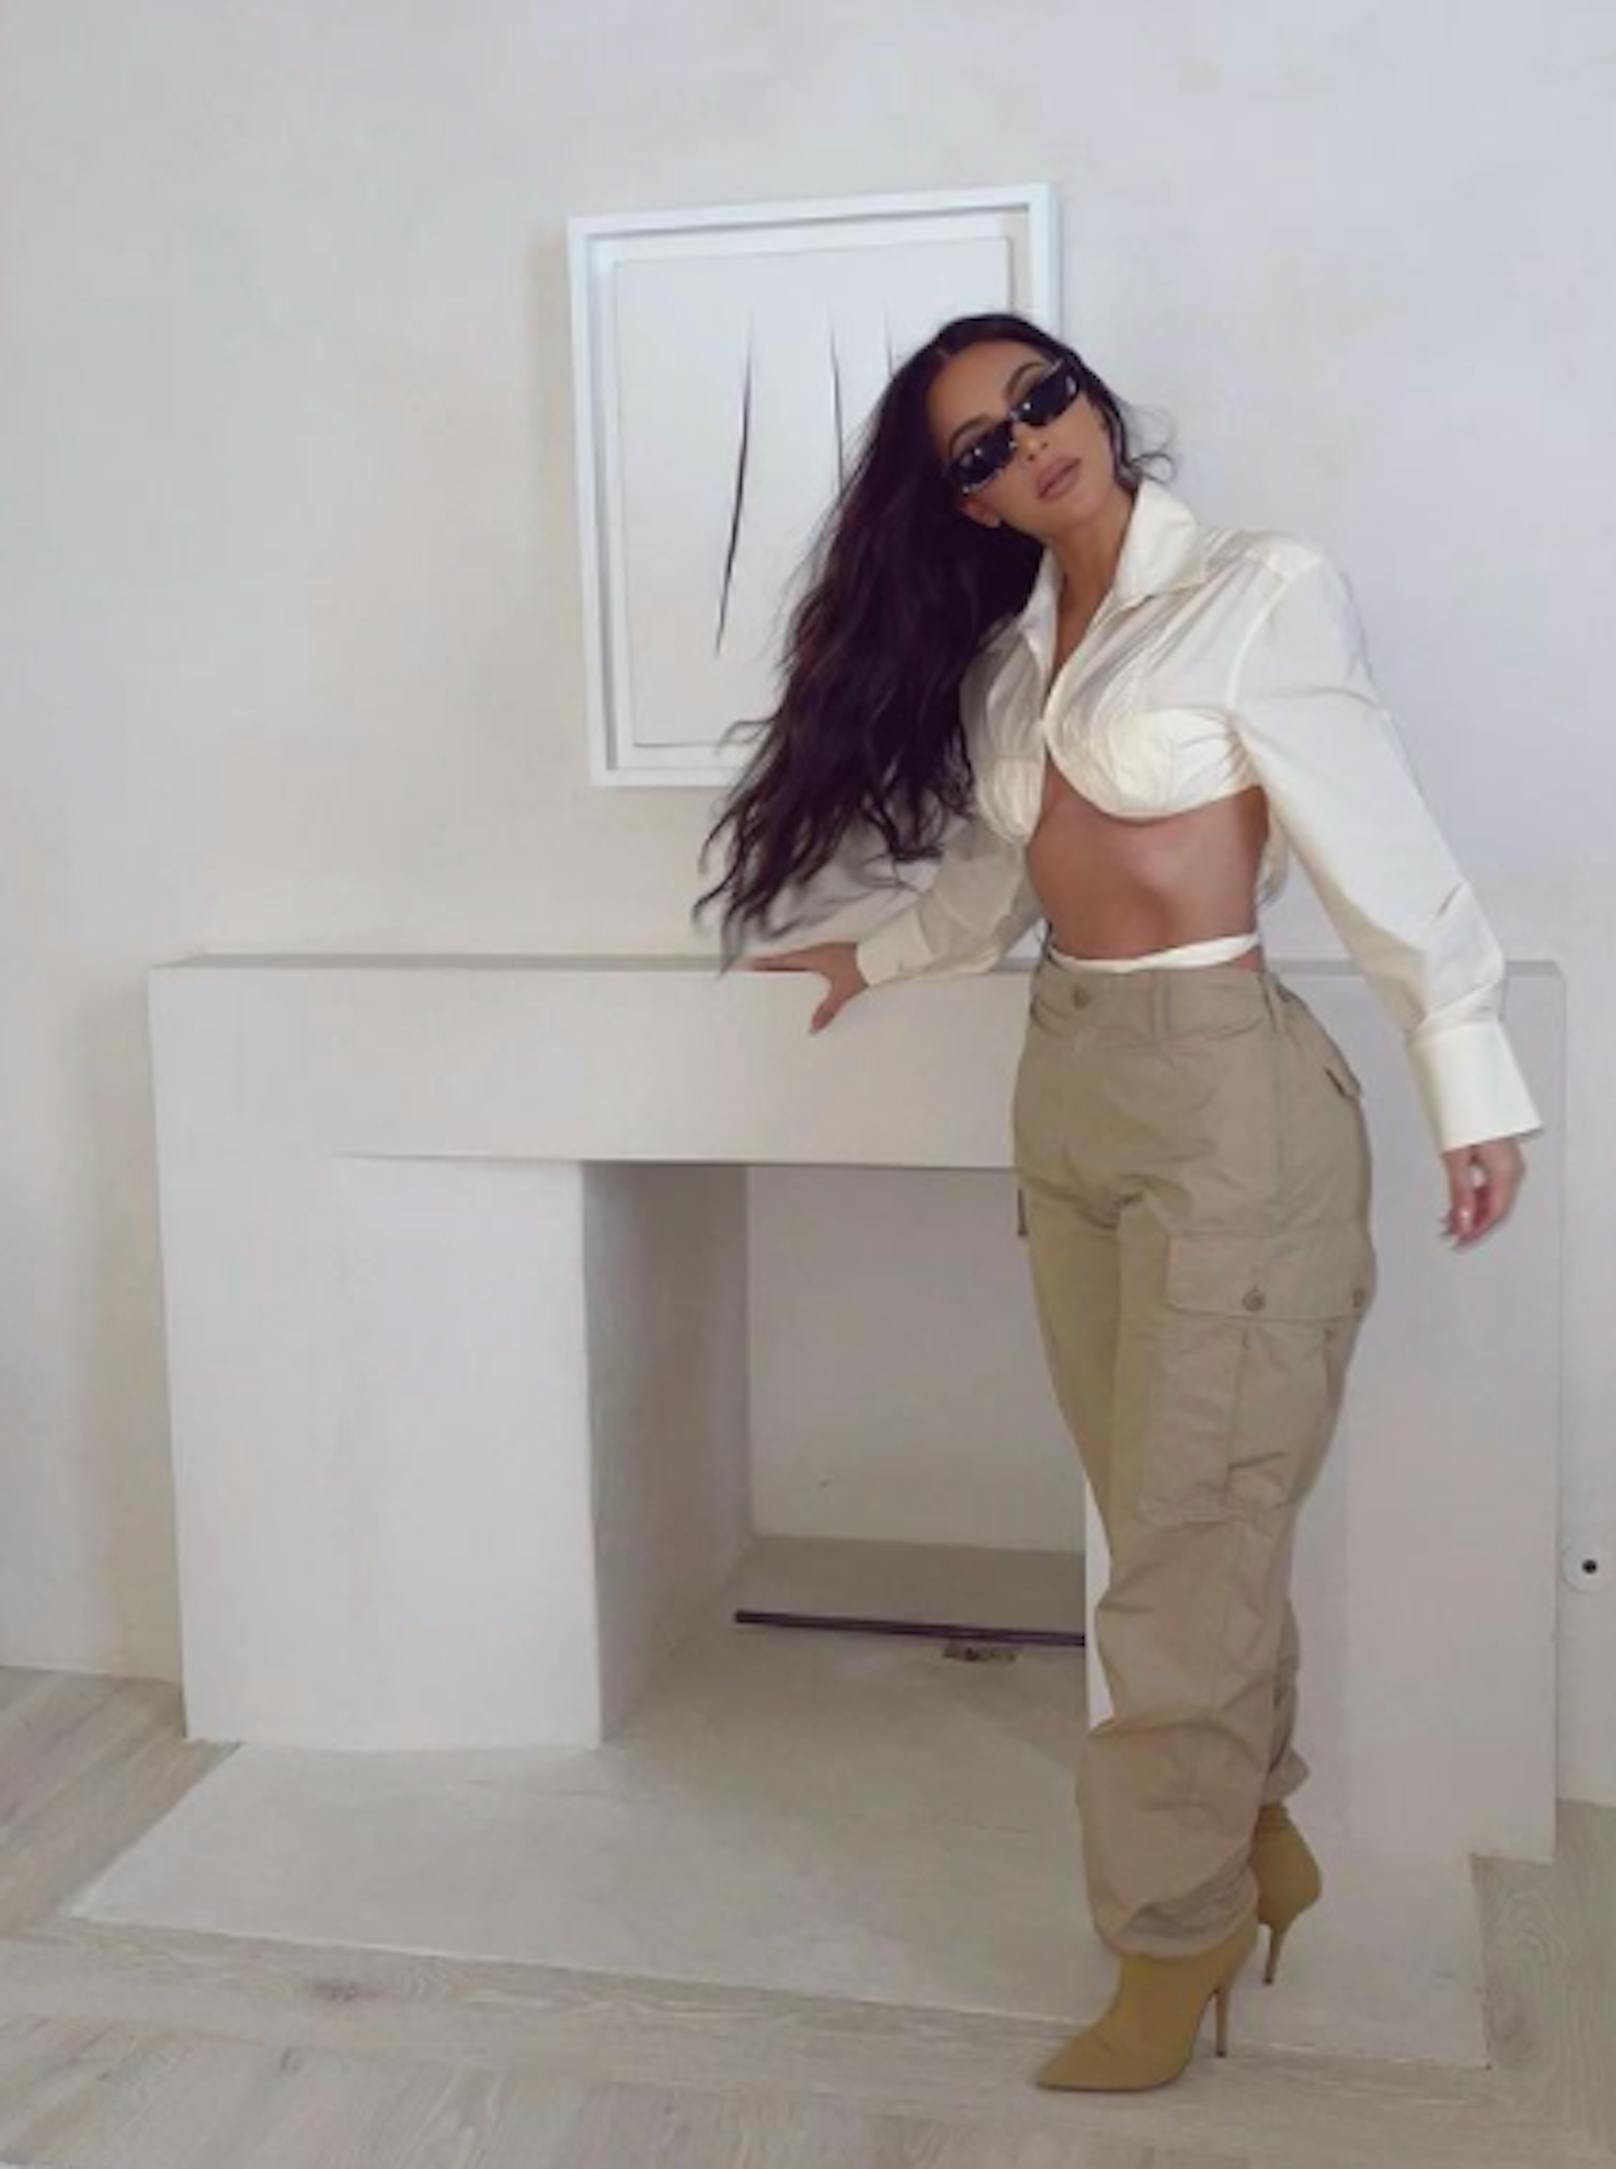 Jetzt ist es offiziell: It-Girl Kim Kardashian lässt sich von Ehemann Kanye West scheiden. Auf Instagram sprach sie kein Wort darüber, stattdessen machte sie Werbung in eigener Sache. Sie postete neun Fotos aus der Kardashians Klamotten-Linie.